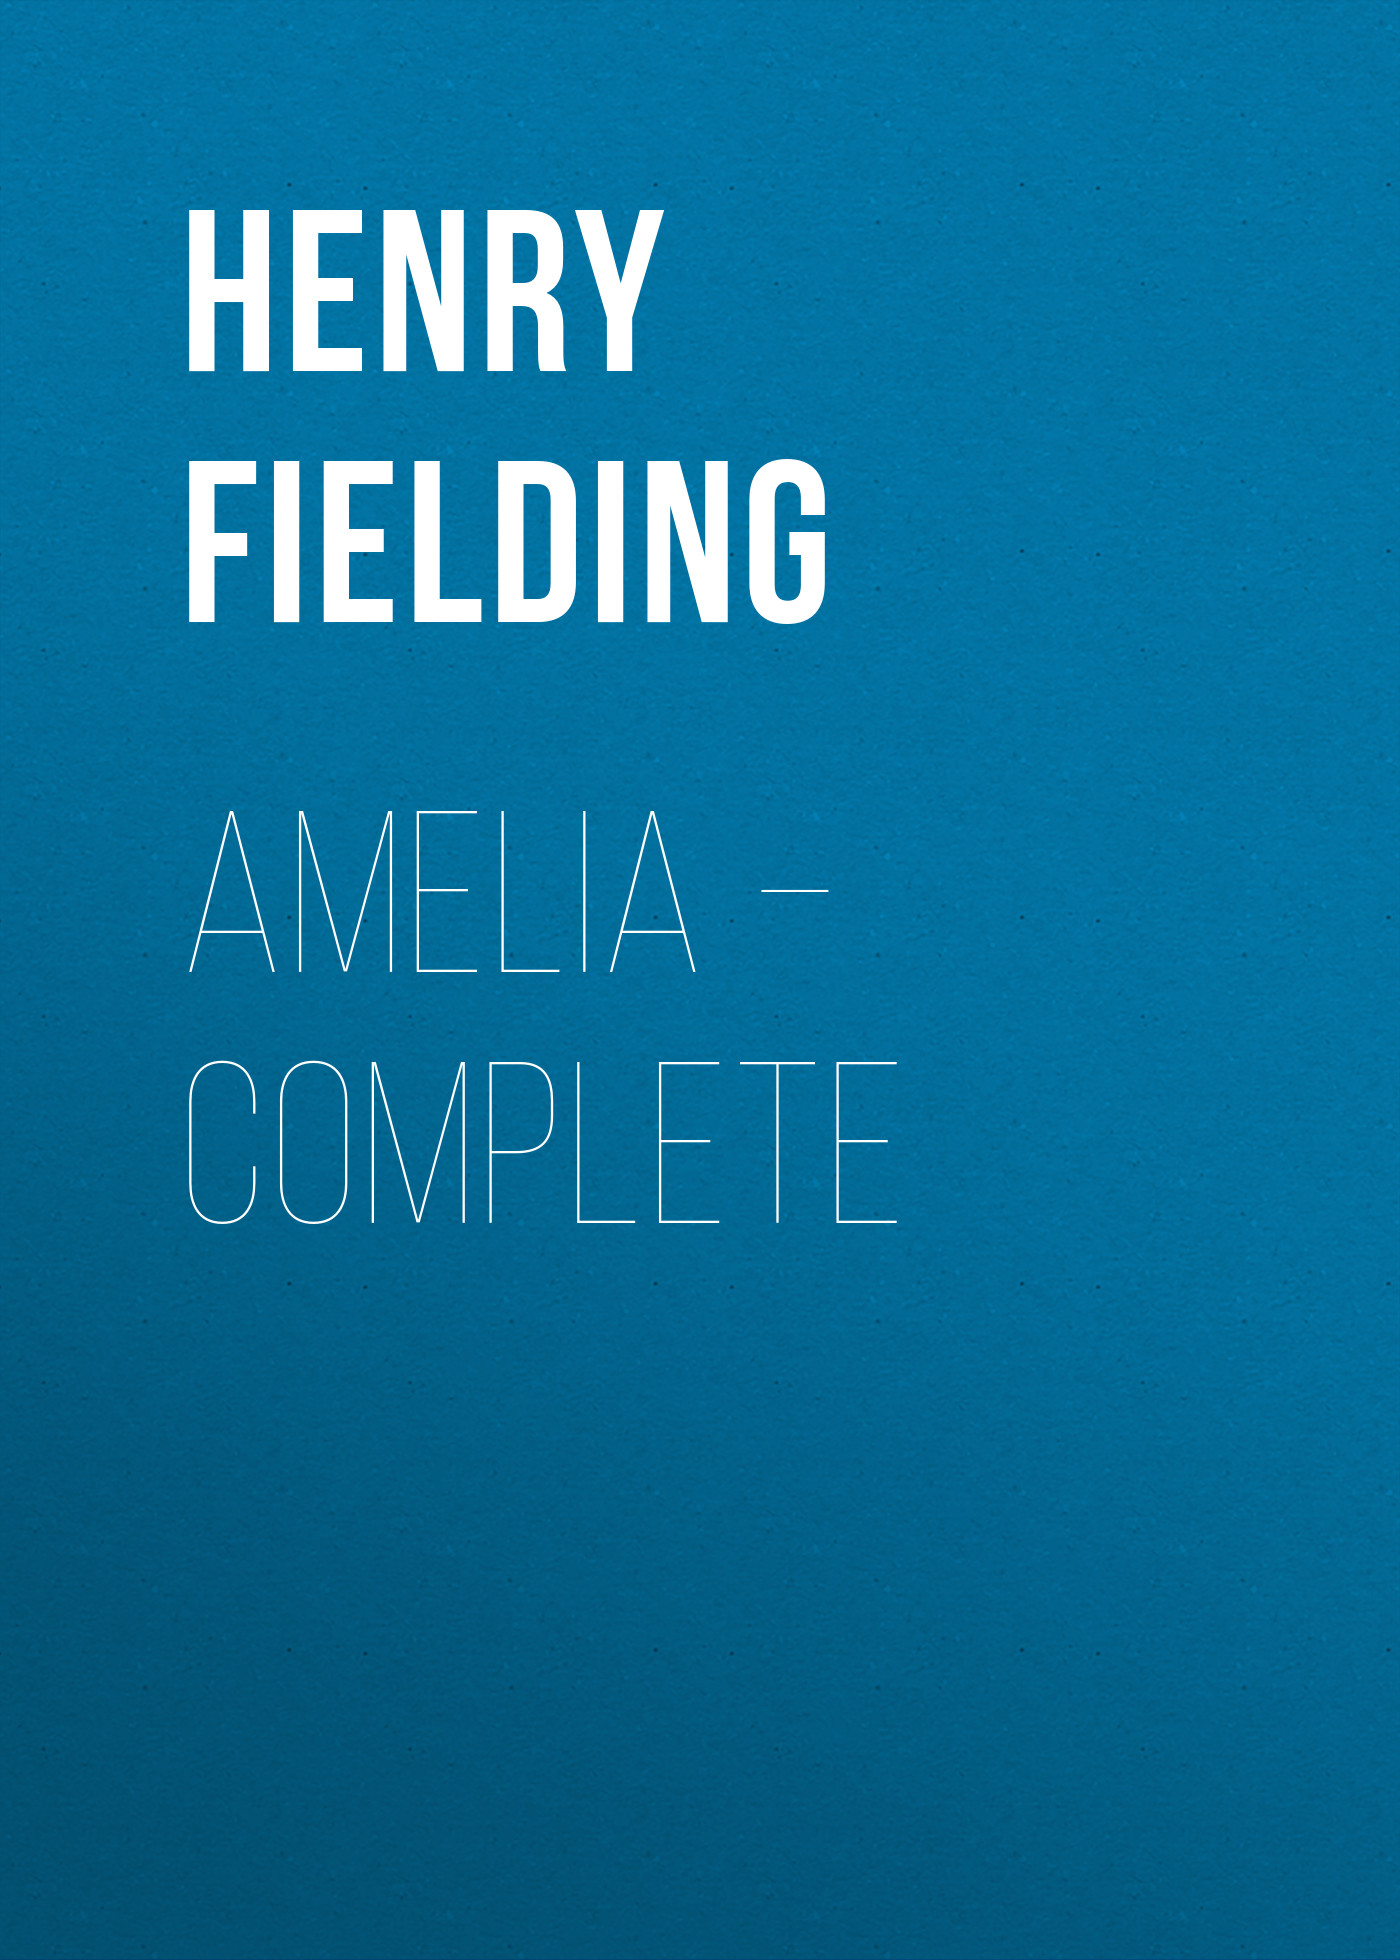 Книга Amelia – Complete из серии , созданная Henry Fielding, может относится к жанру Зарубежная классика, Зарубежная старинная литература. Стоимость электронной книги Amelia – Complete с идентификатором 25202711 составляет 0 руб.